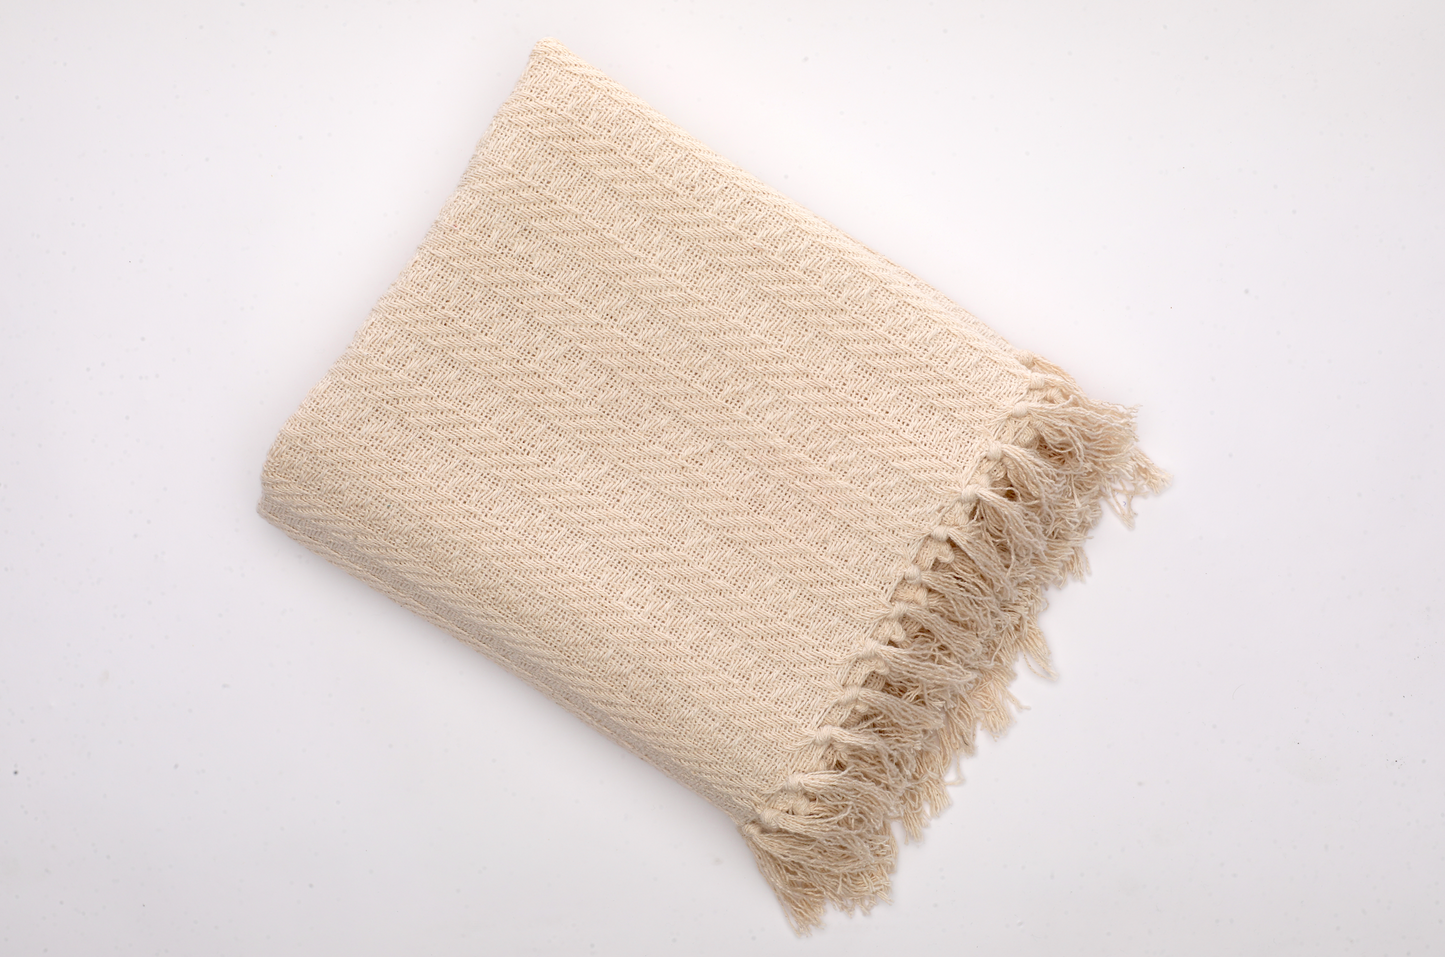 Minimalist Cotton Throw Blanket - Neutral